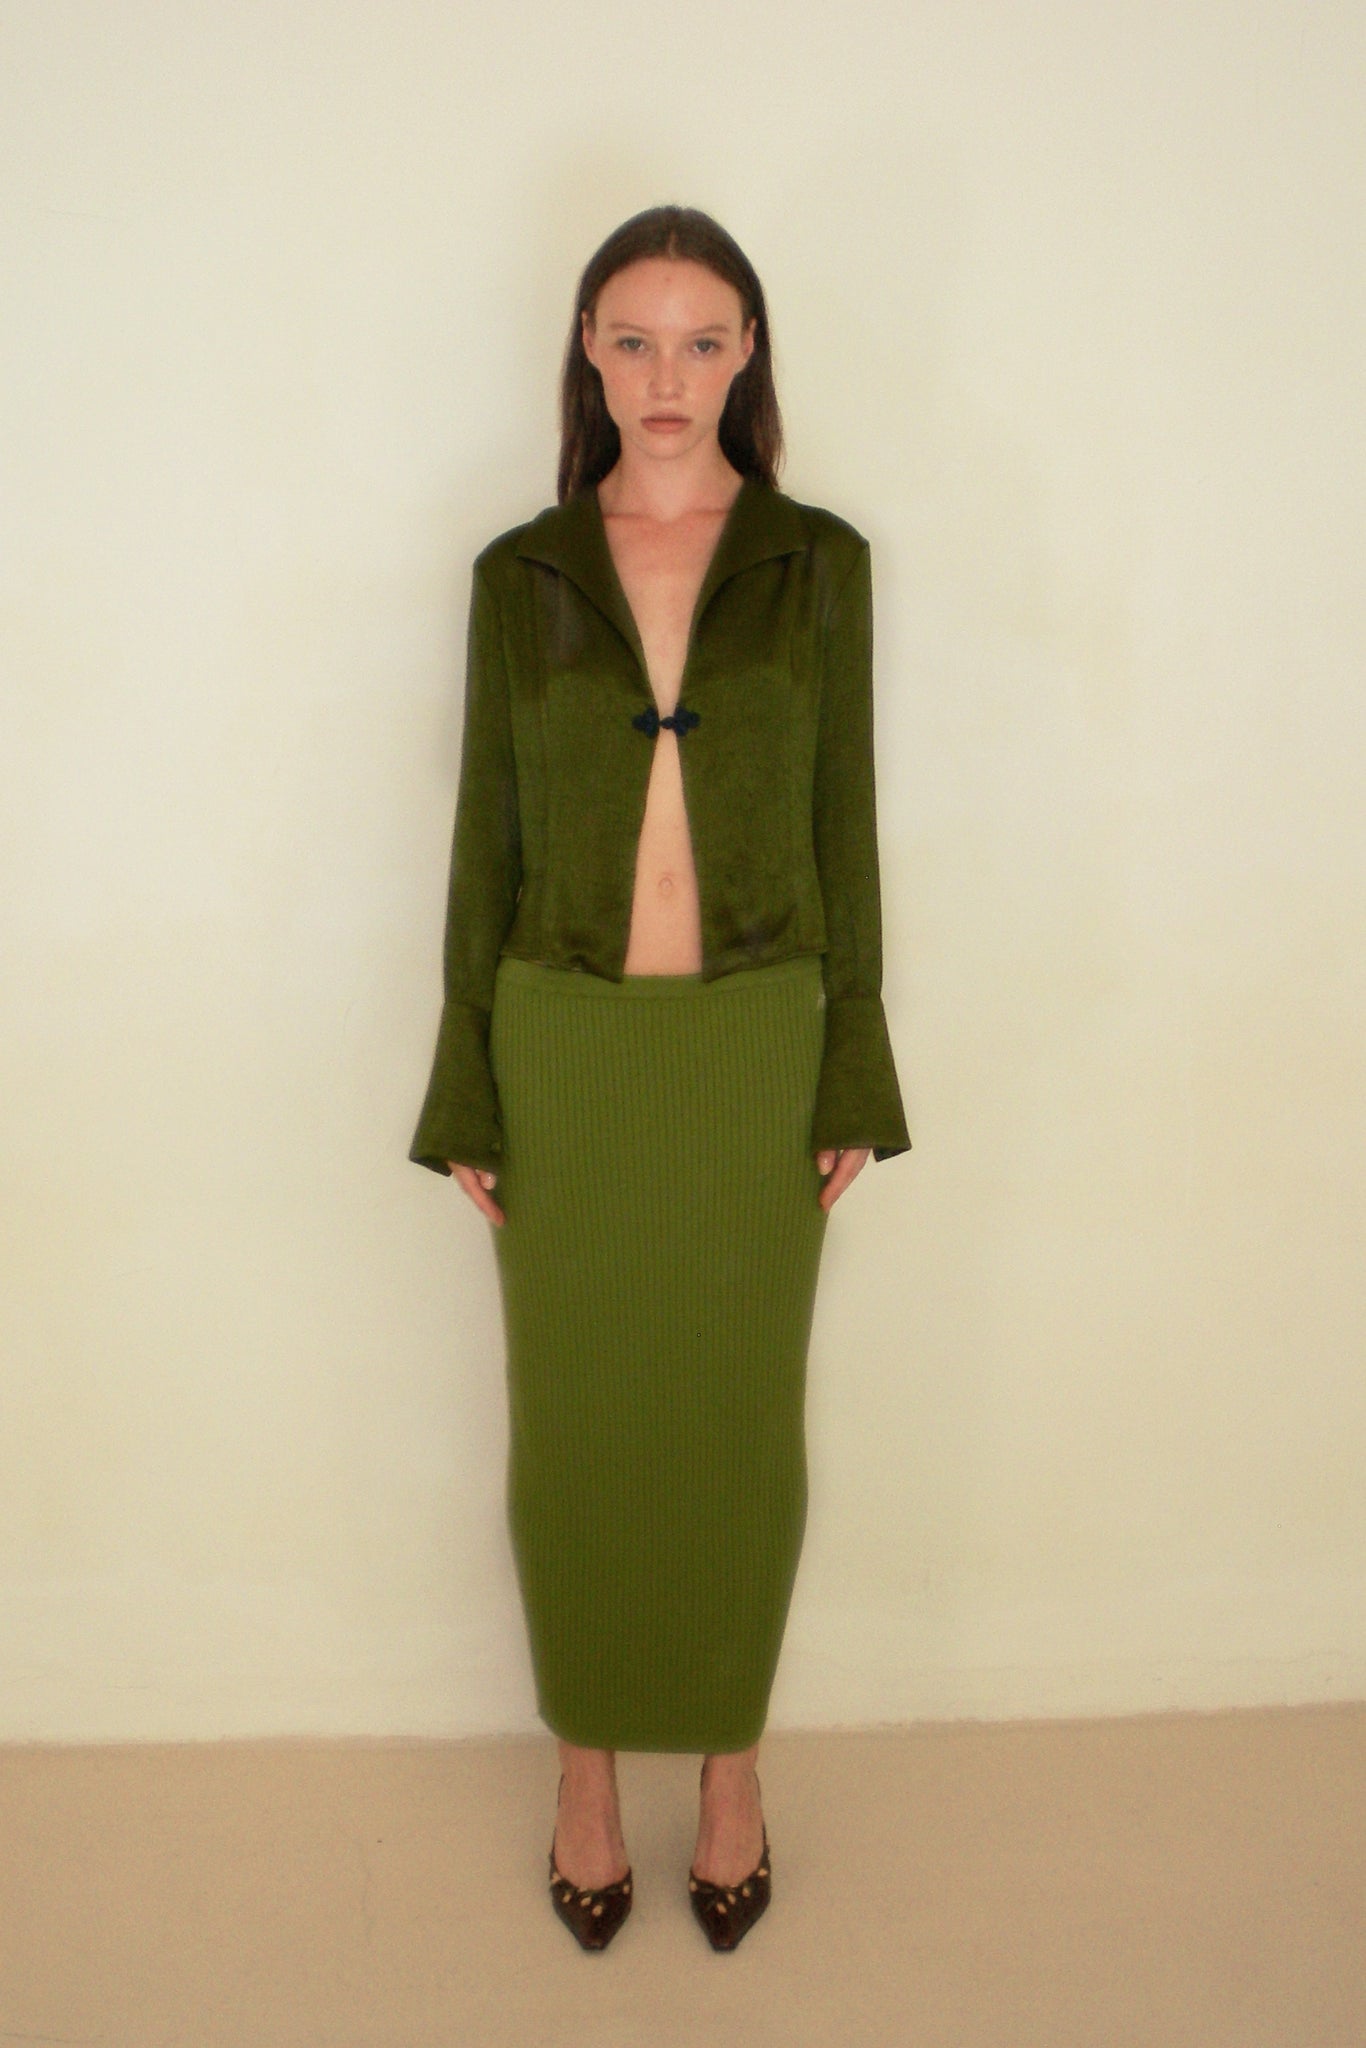 Paltrow Skirt Green